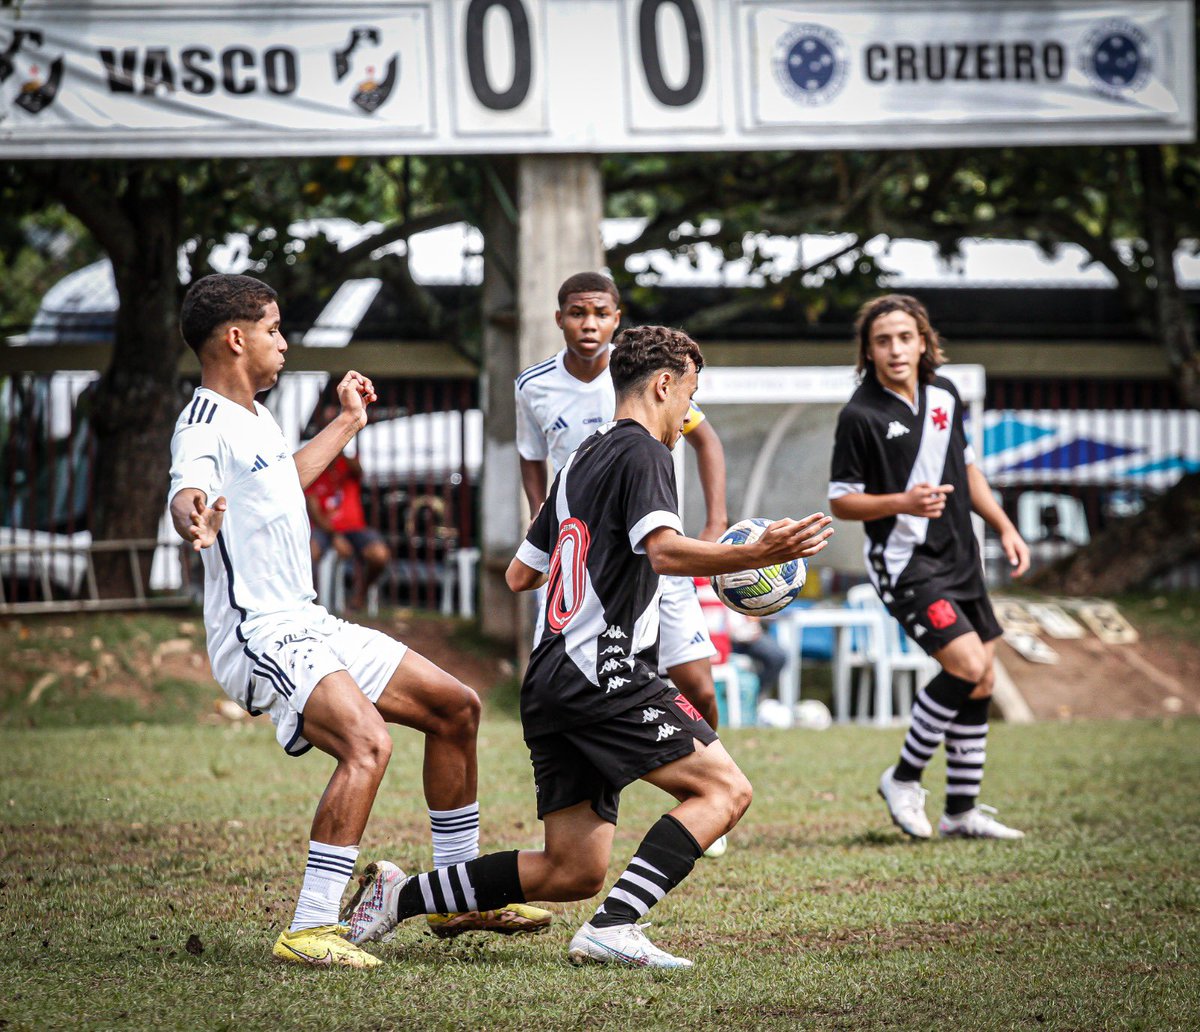 NETVASCO - Confira comparativo das estatísticas de Vasco e Cruzeiro no  Brasileiro